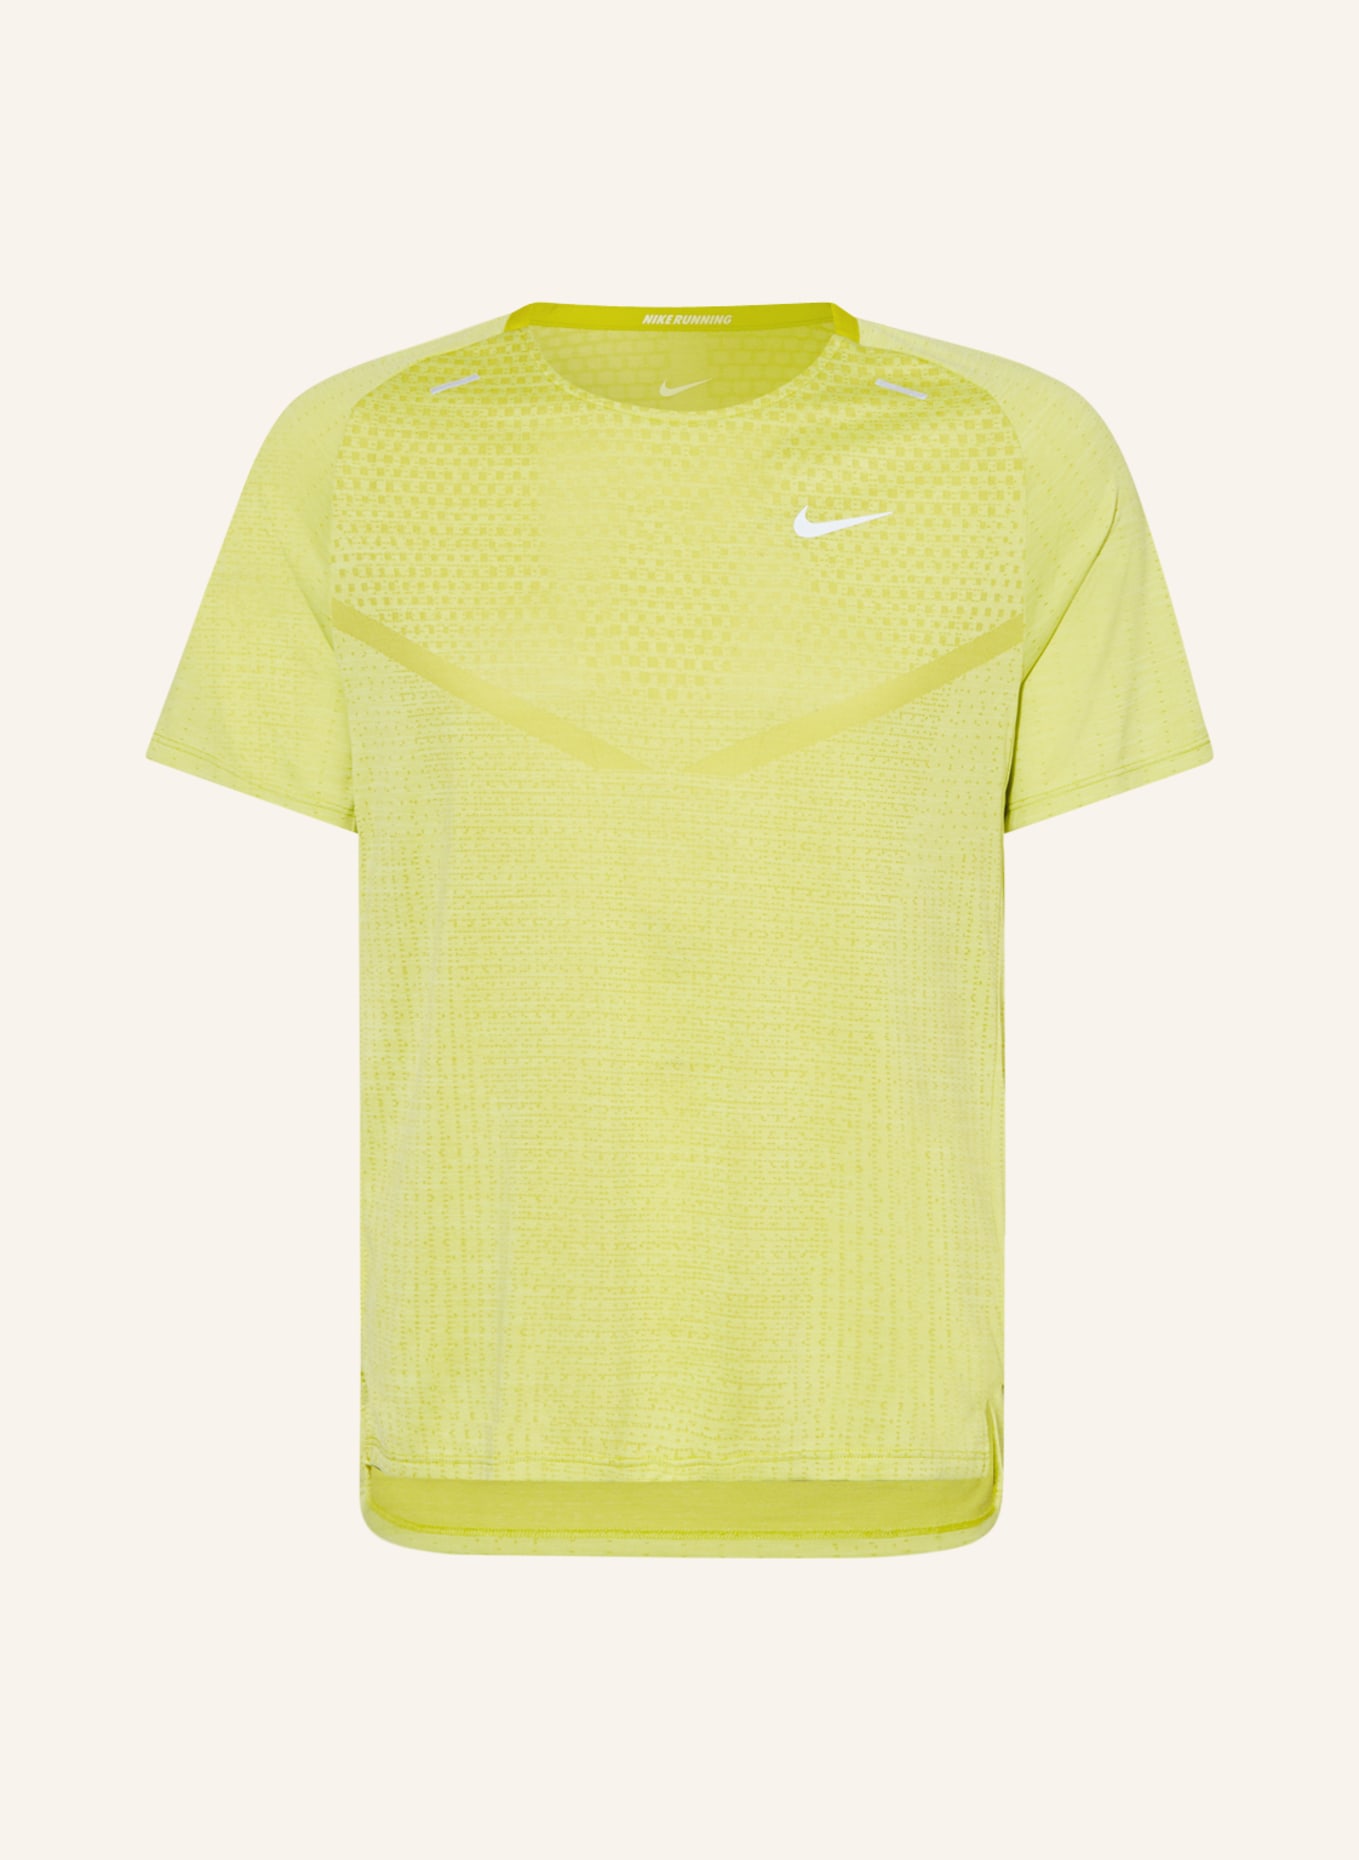 Nike Laufshirt DRI-FIT ADV, Farbe: NEONGELB (Bild 1)